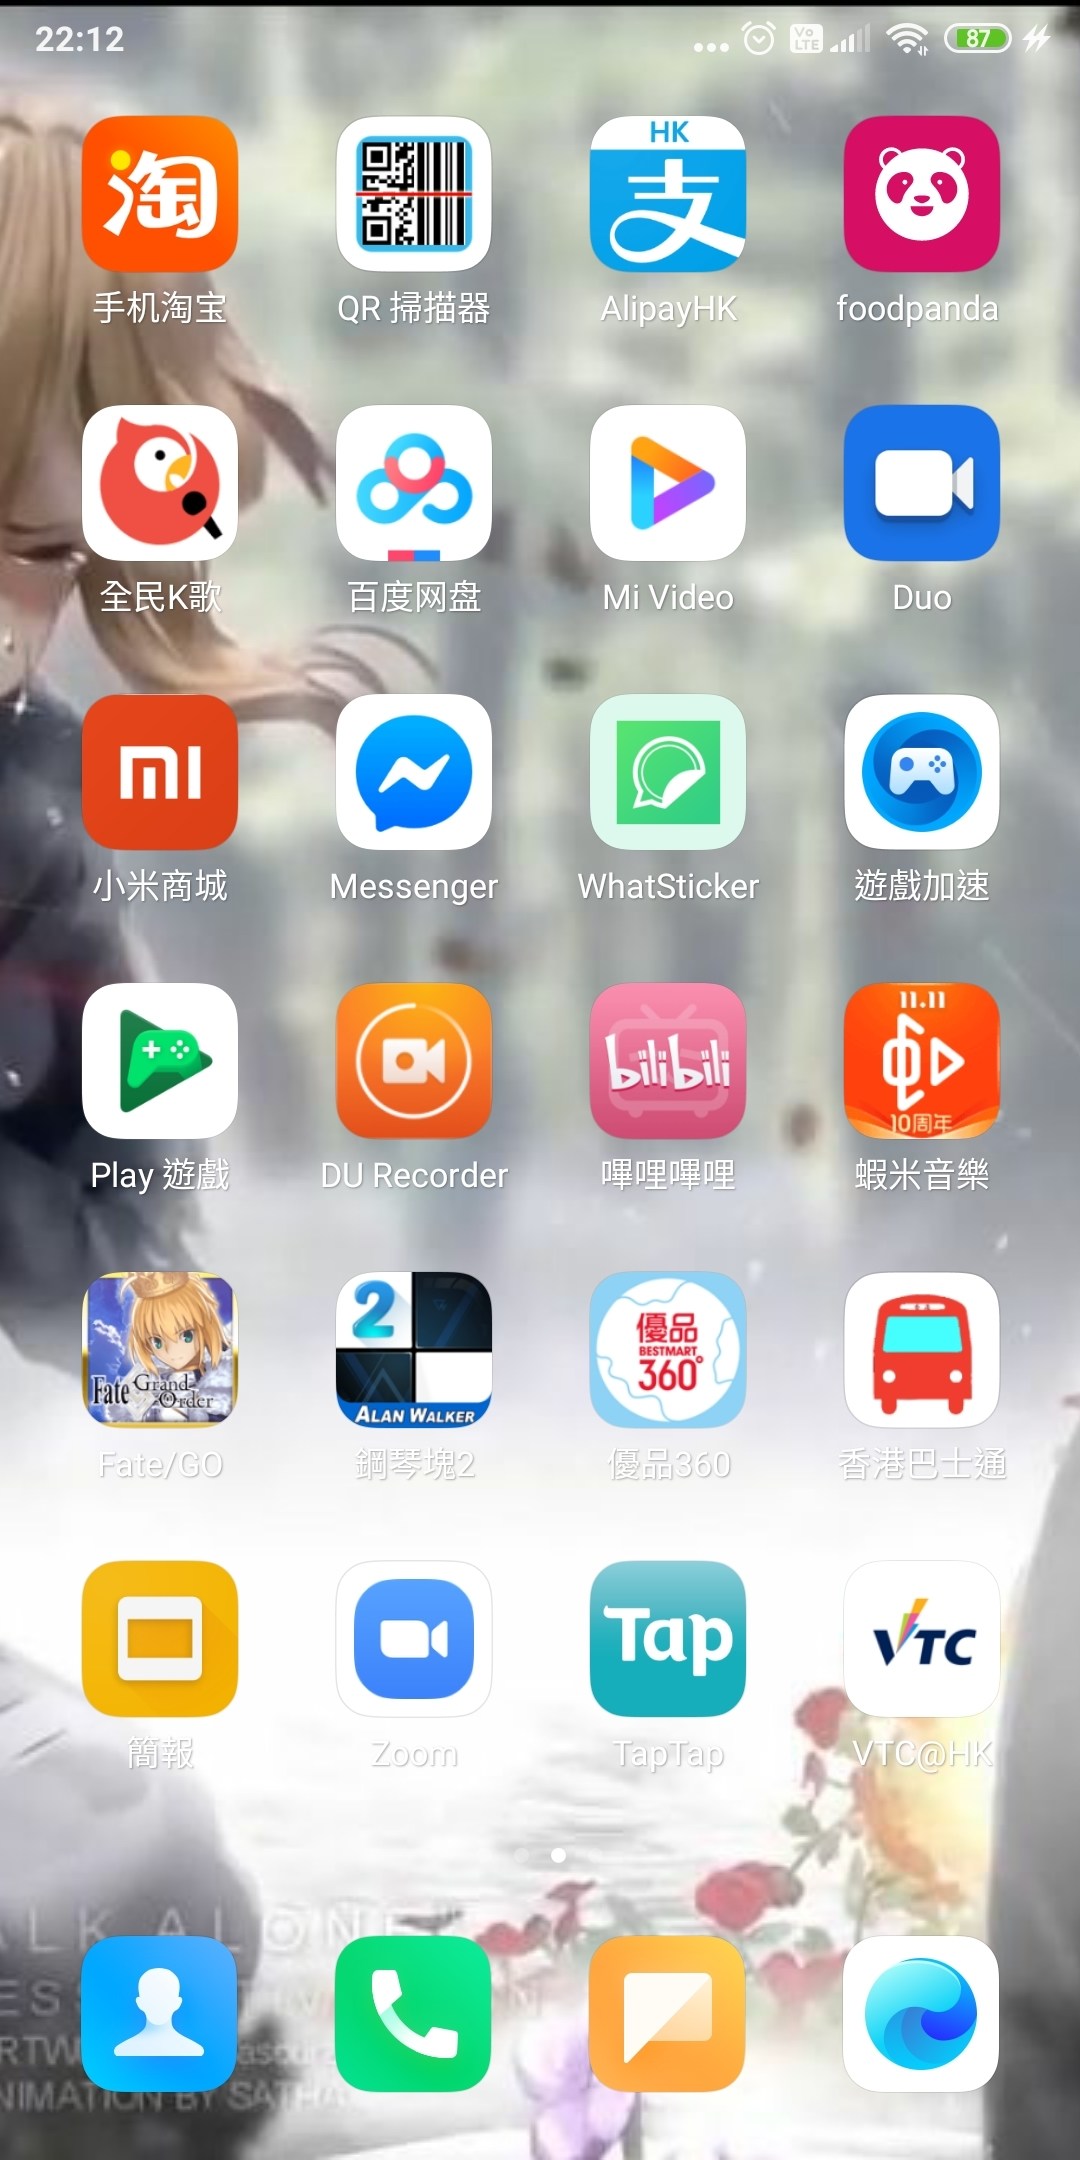 Fate/Samurai Remnant android iOS-TapTap